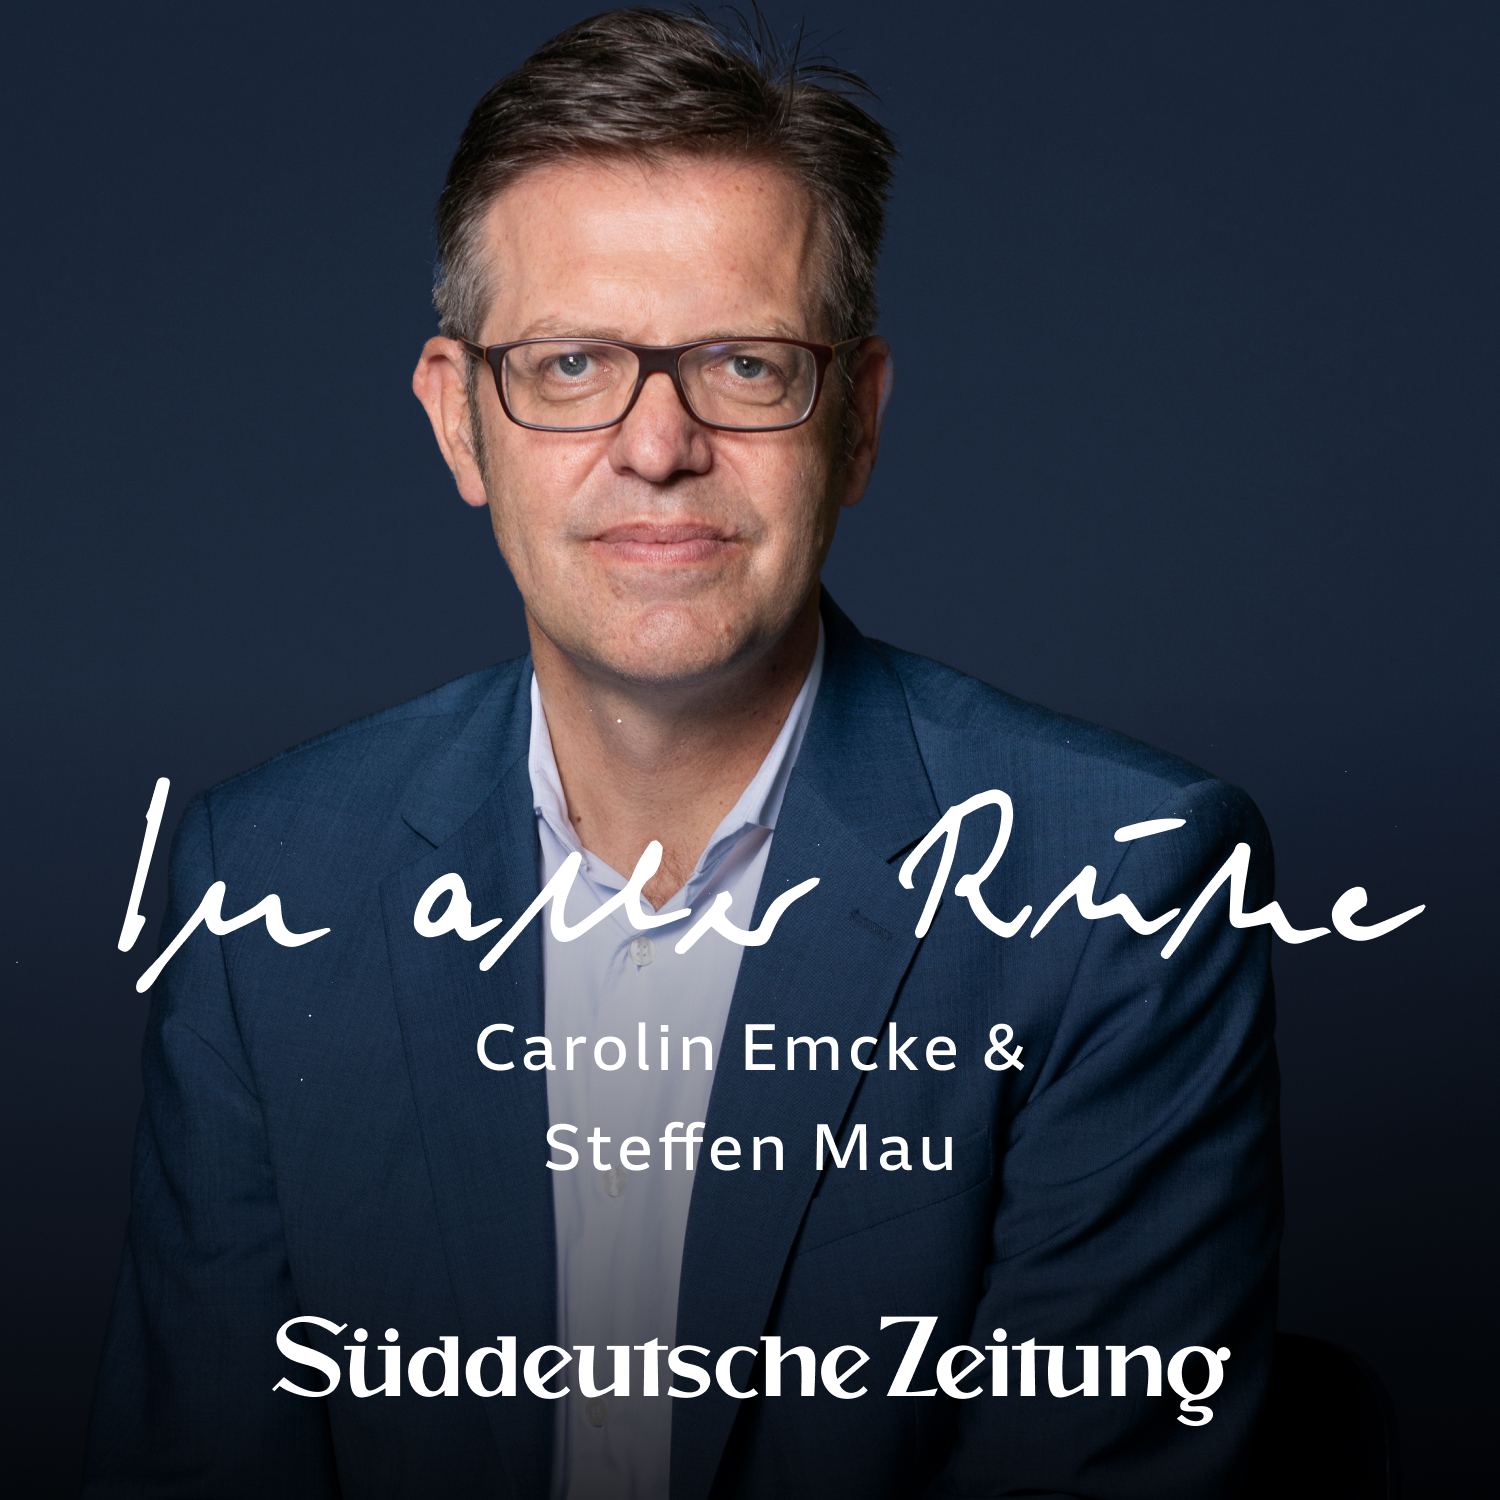 „Zweifel werden übersehen“ – Steffen Mau bei Carolin Emcke über Affektpolitik und Spaltung